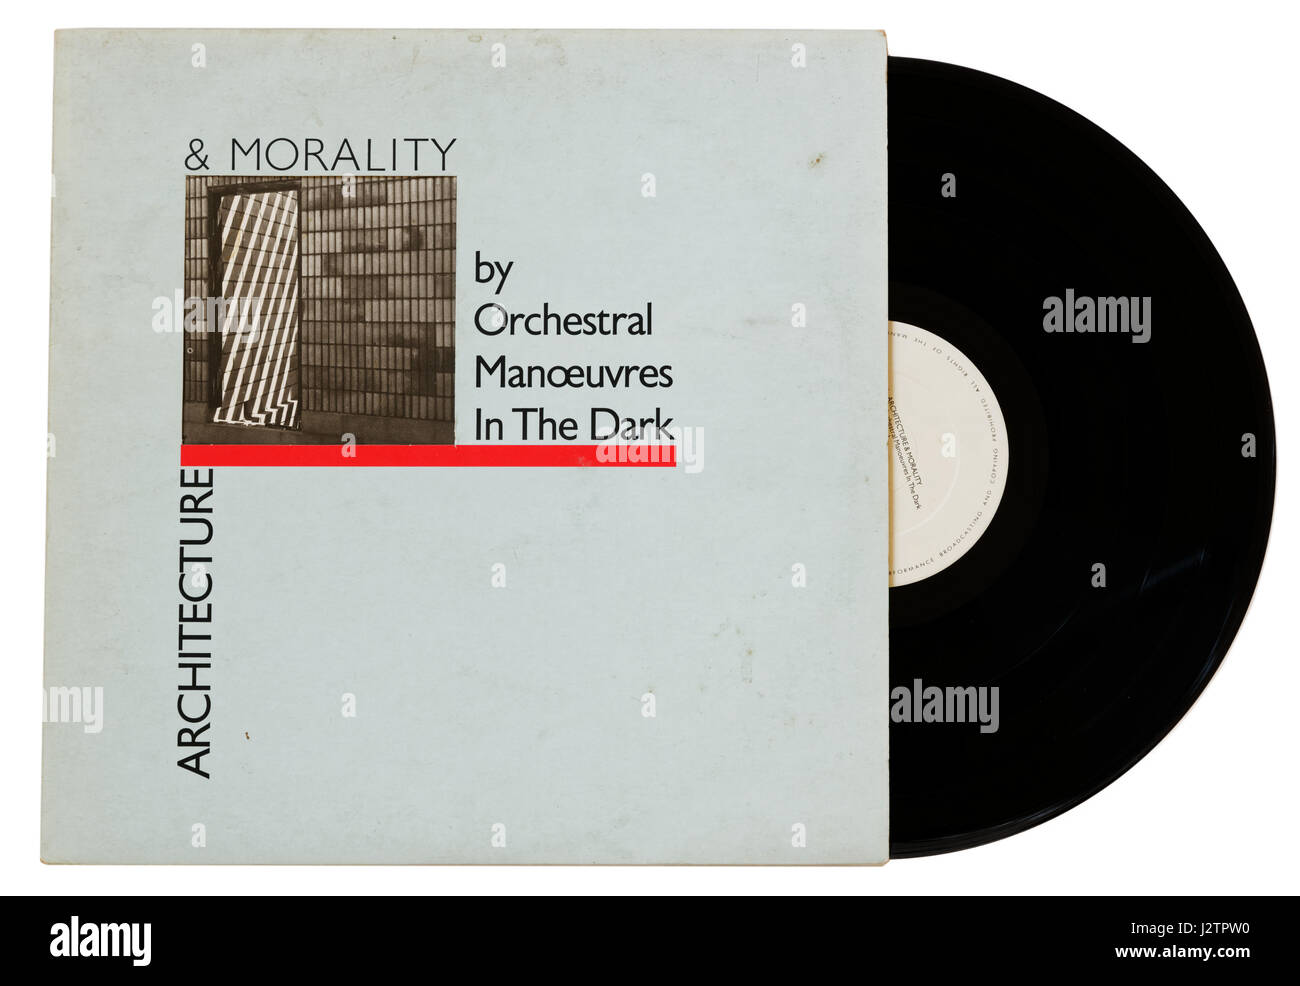 Orchestral Manoeuvres in das dunkle Album Architektur & Moral auf vinyl Stockfoto